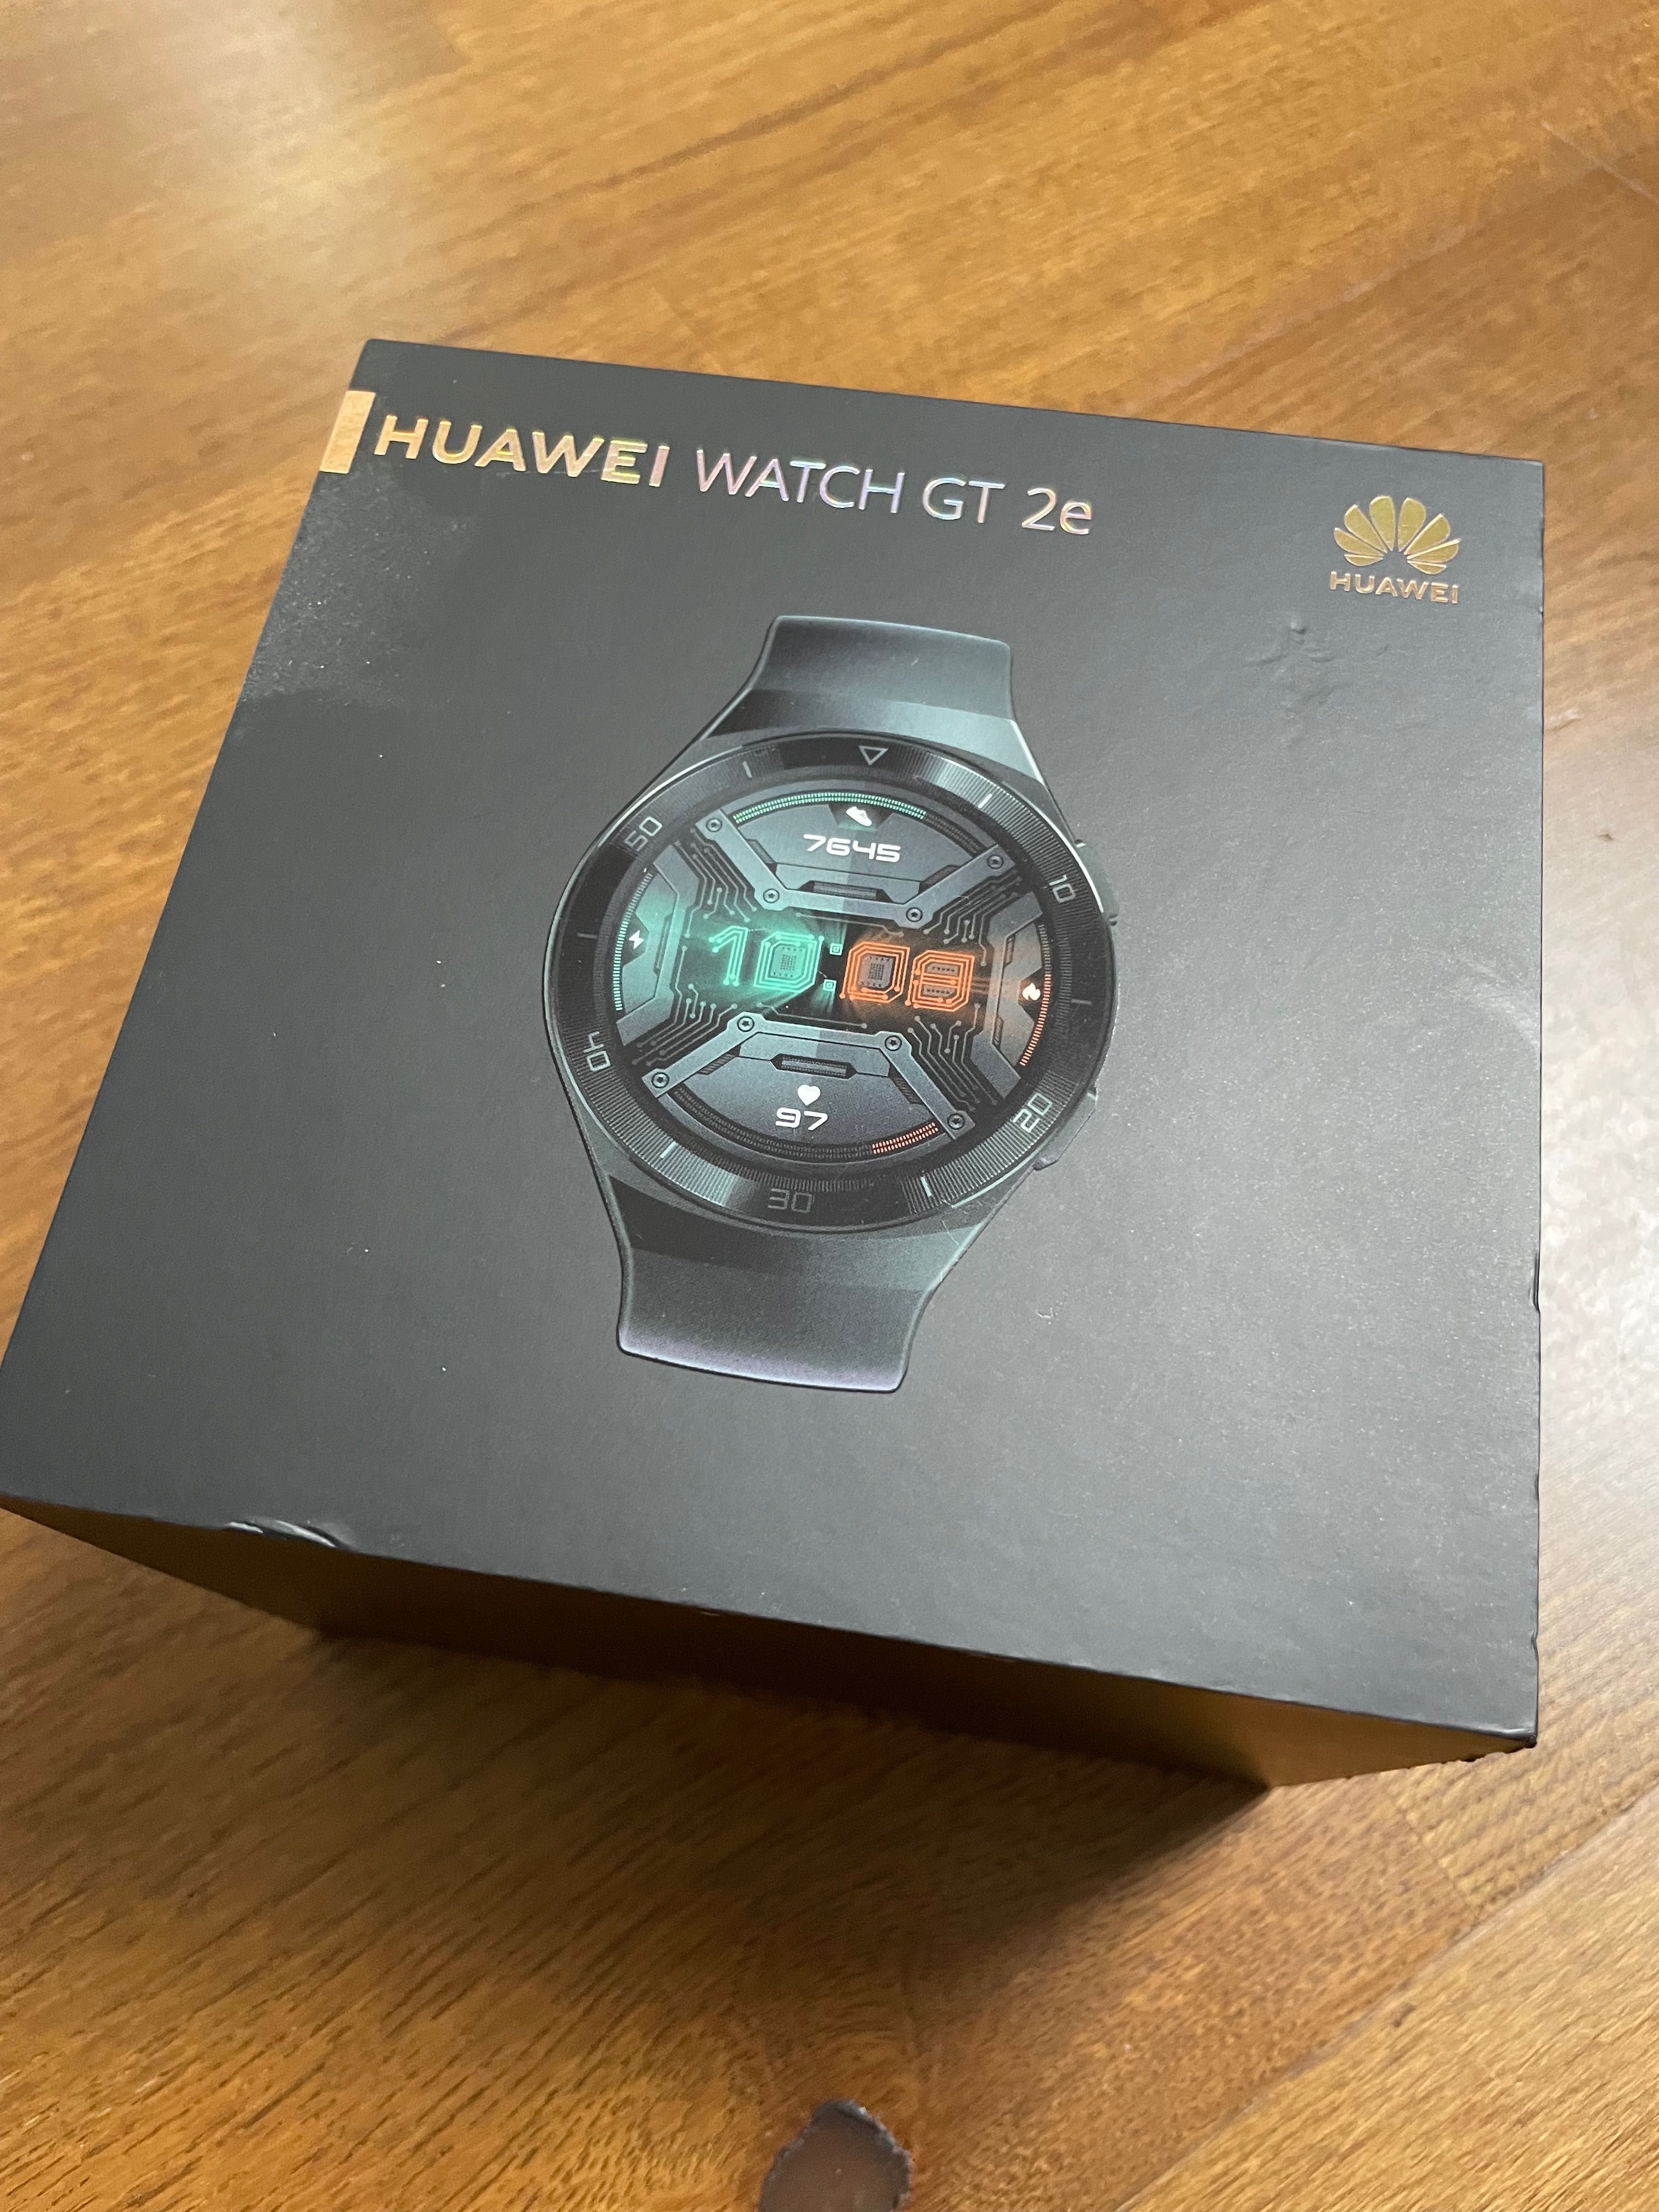 Huawei Watch GT 2e - czerwony pasek